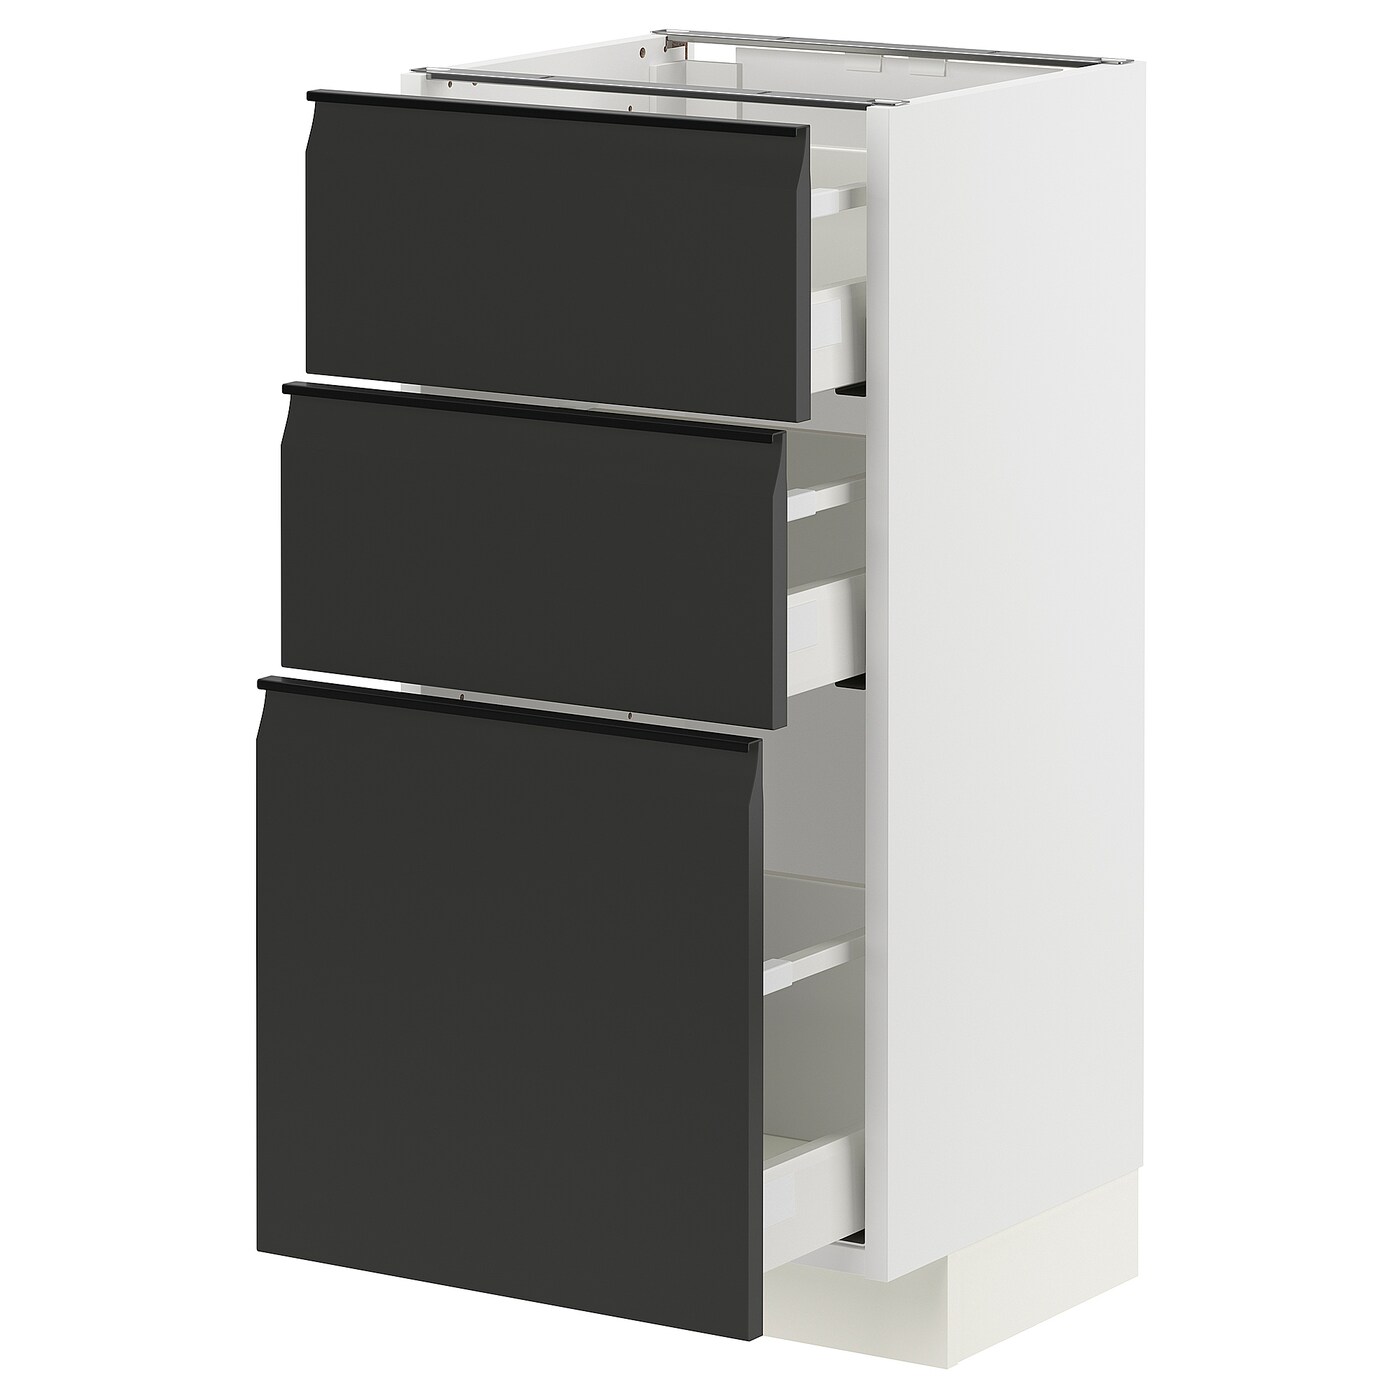 Напольный кухонный шкаф  - IKEA METOD MAXIMERA, 88x39x40см, белый/черный, МЕТОД МАКСИМЕРА ИКЕА